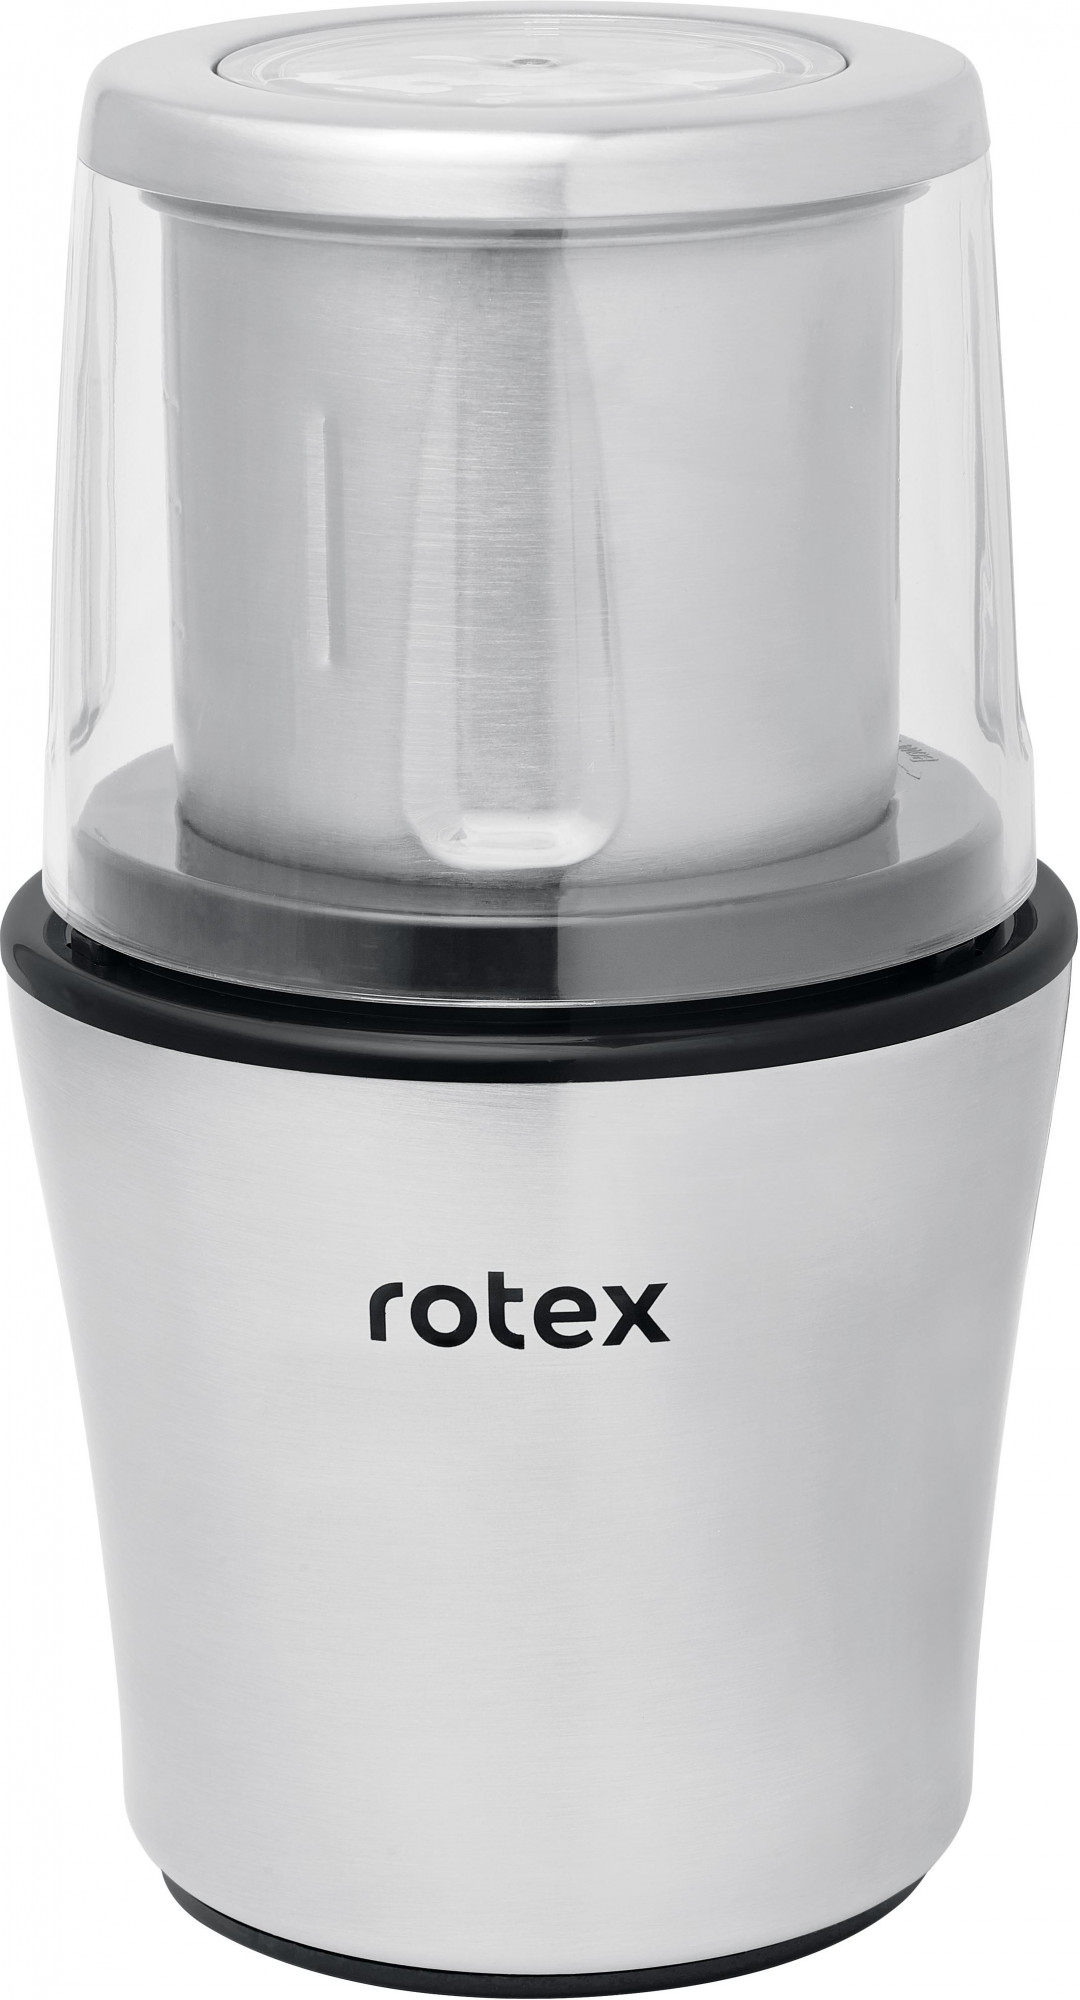 Rotex RCG305-T MultiPro - зображення 1